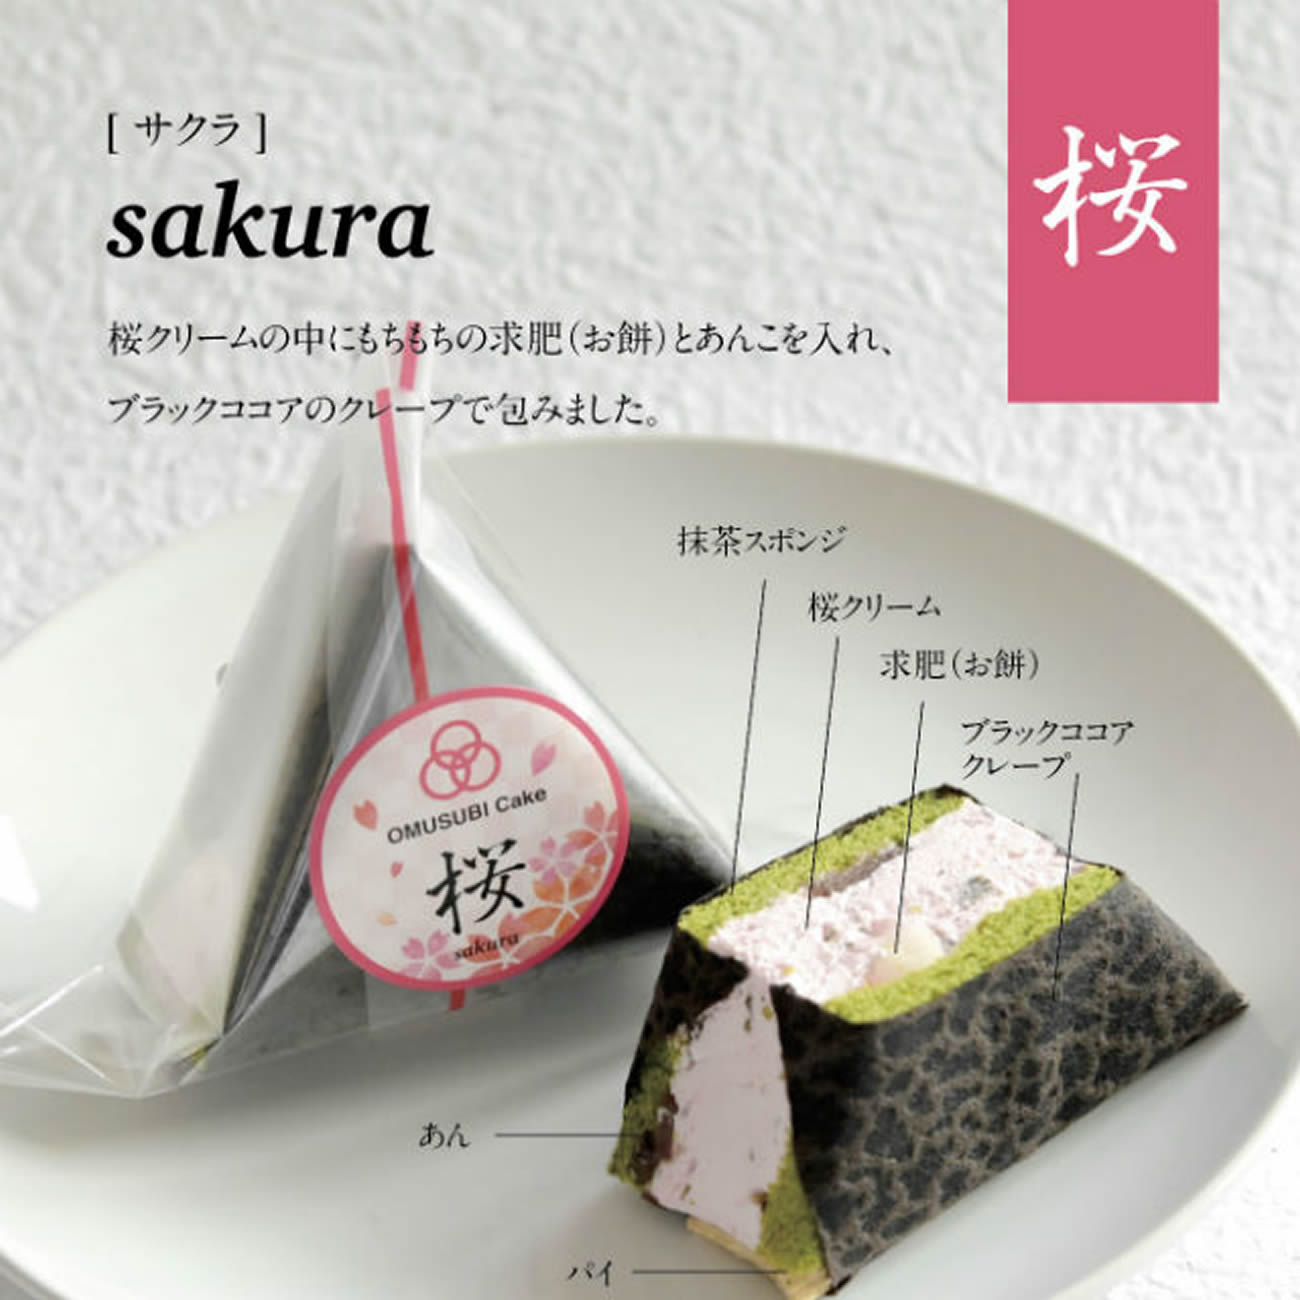 Onigiri para sobremesa: bolinhos que fizeram sucesso retornam, com pedidos on-line e novo sabor sakura